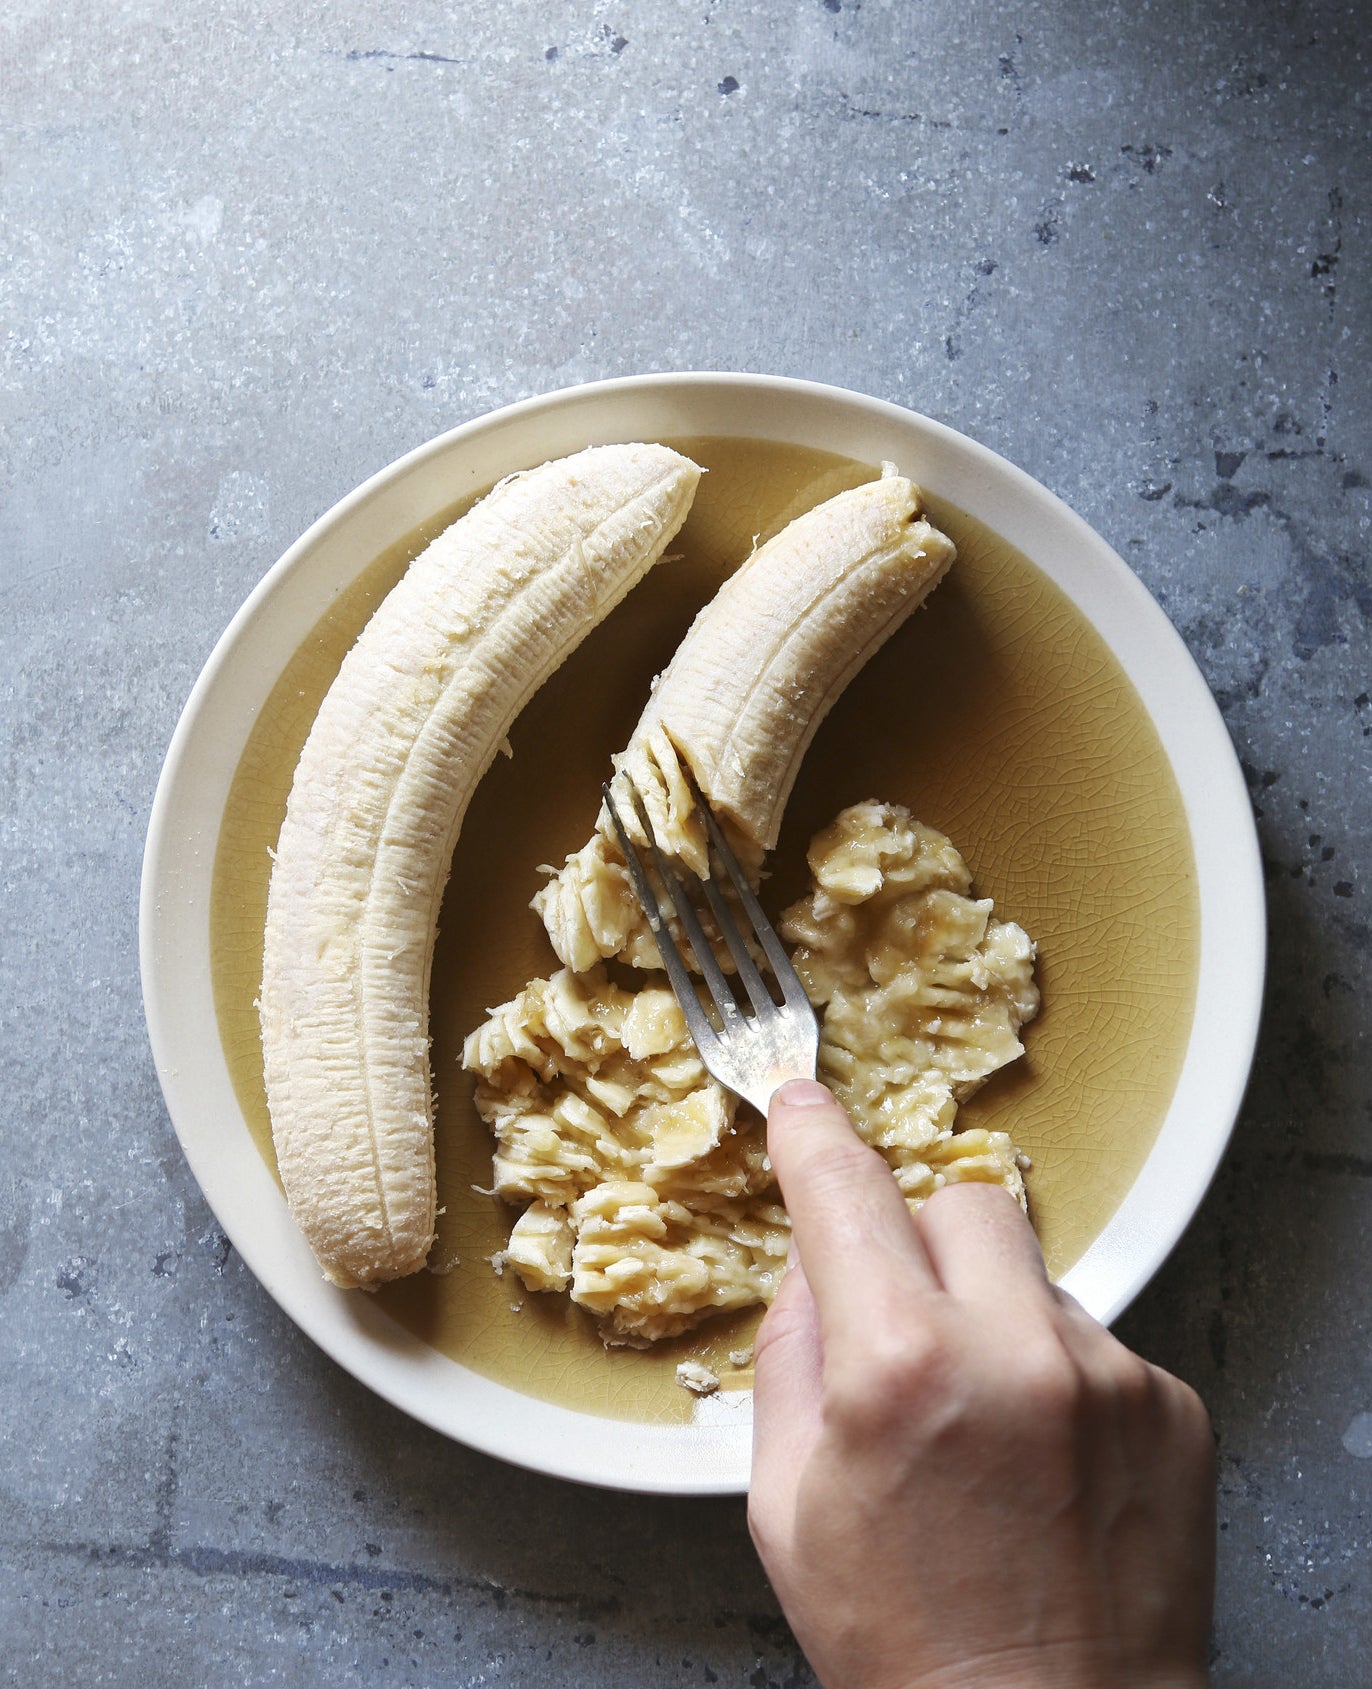 Mashing banana in a bowl